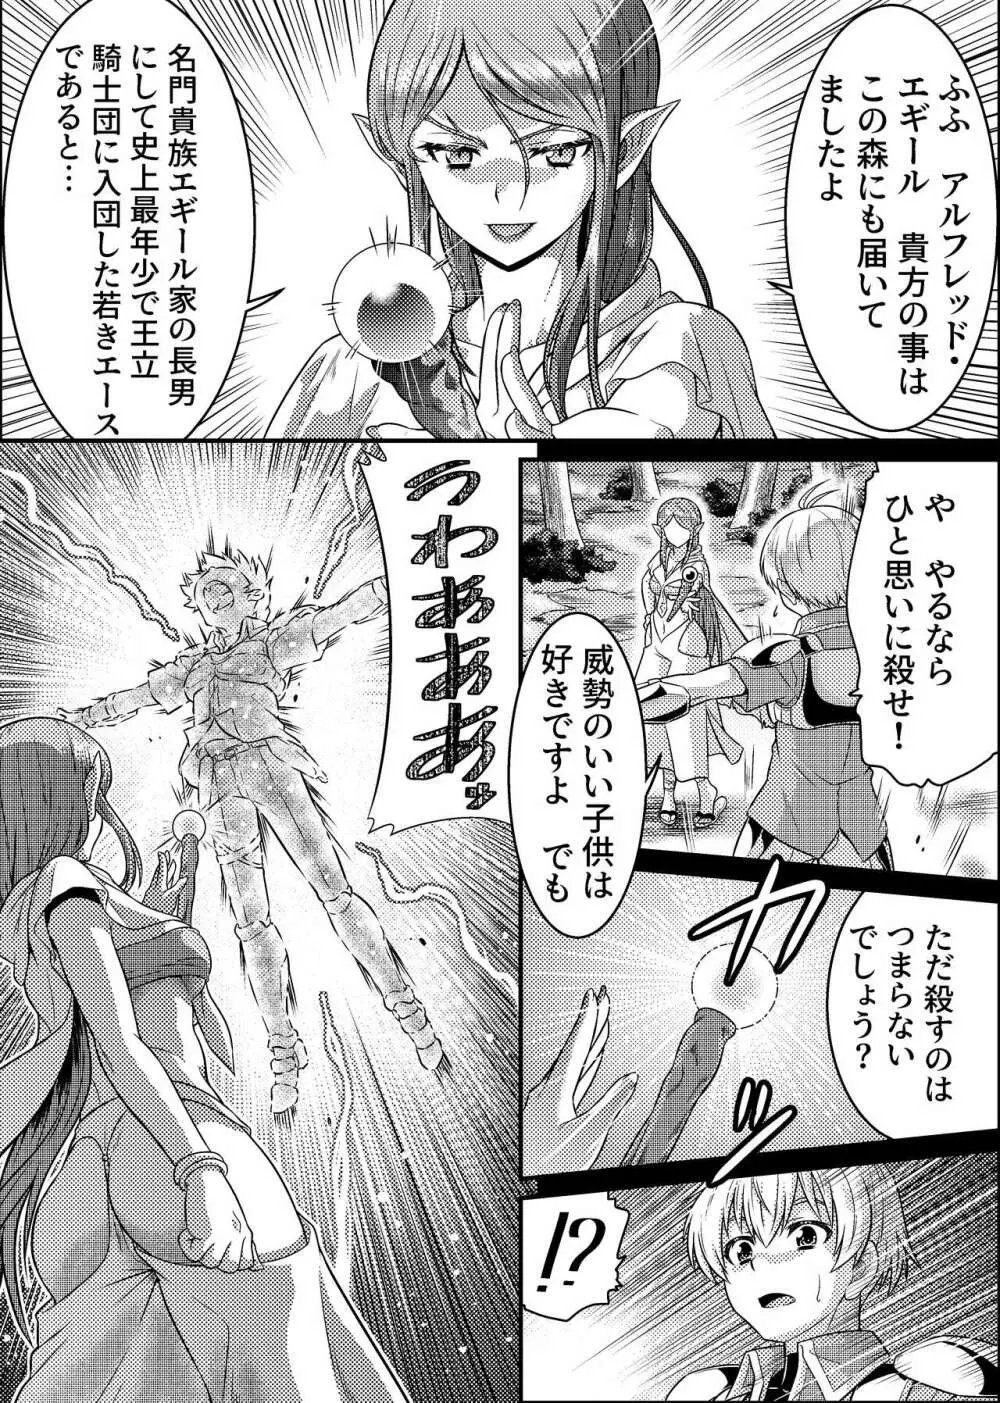 TS騎士と女装メイドの大冒険 第1話「呪いを解く方法」 - page3